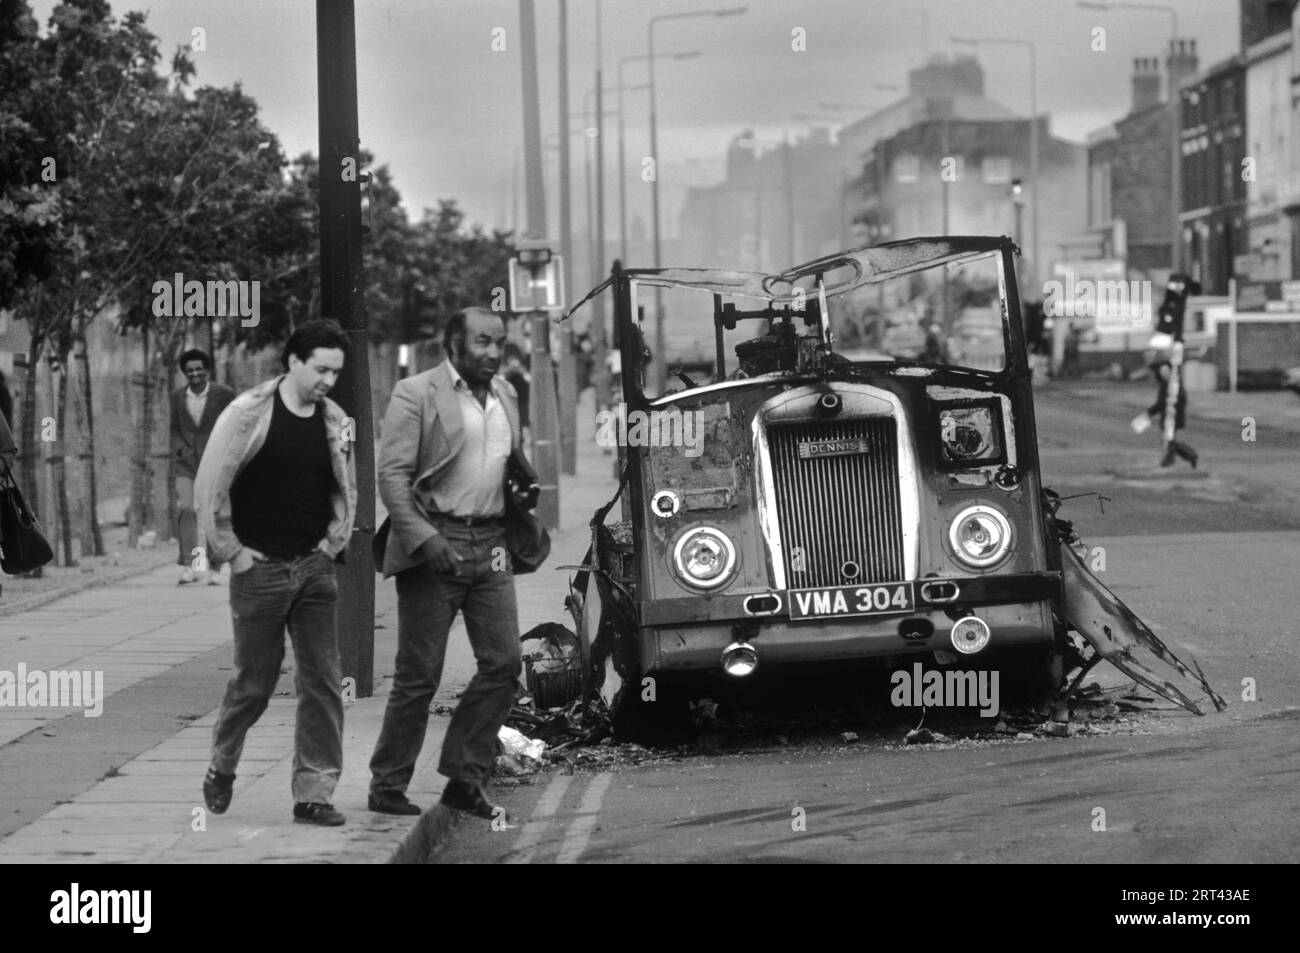 Toxteth stößt in den 1980er Jahren auf Großbritannien auf. Am Morgen nach der Nacht der Unruhen laufen zwei Männer an einem ausgebrannten und zerstörten Bus oder Van vorbei. Toxteth, Liverpool, England um Juli 1981. HOMER SYKES Stockfoto